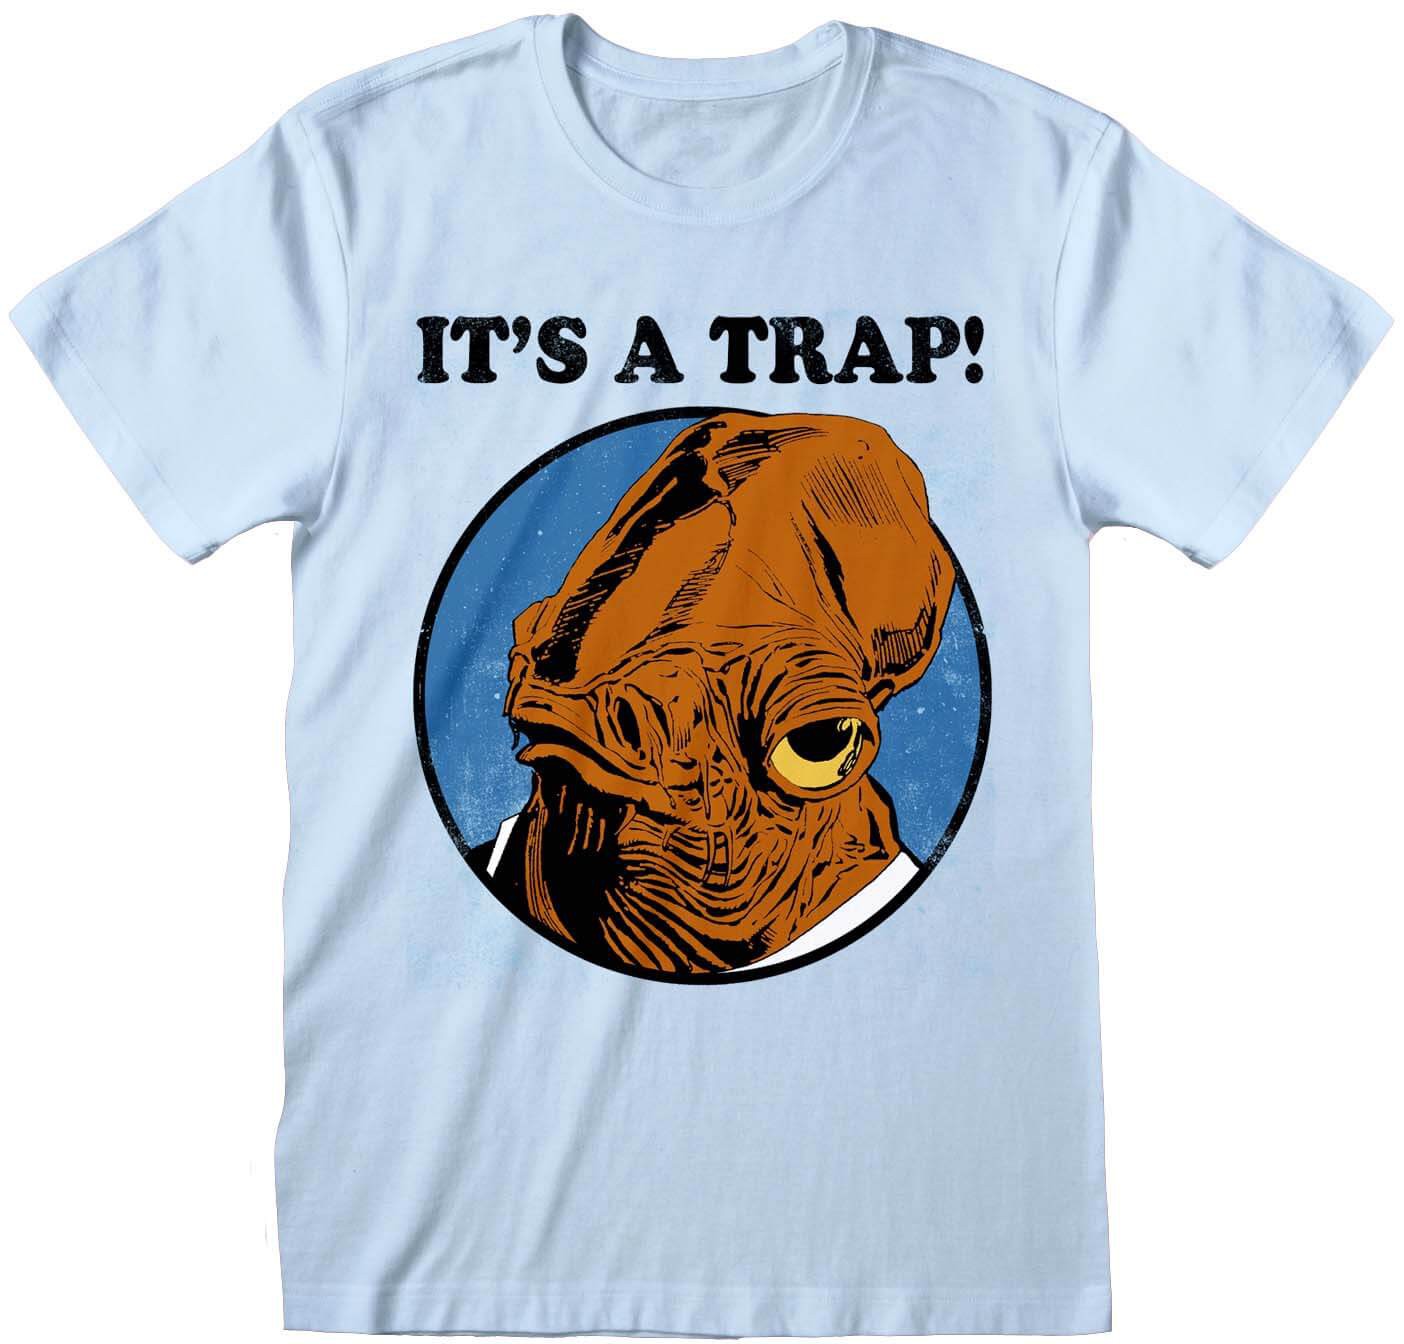 Star Wars - Its A Trap! T-Shirt